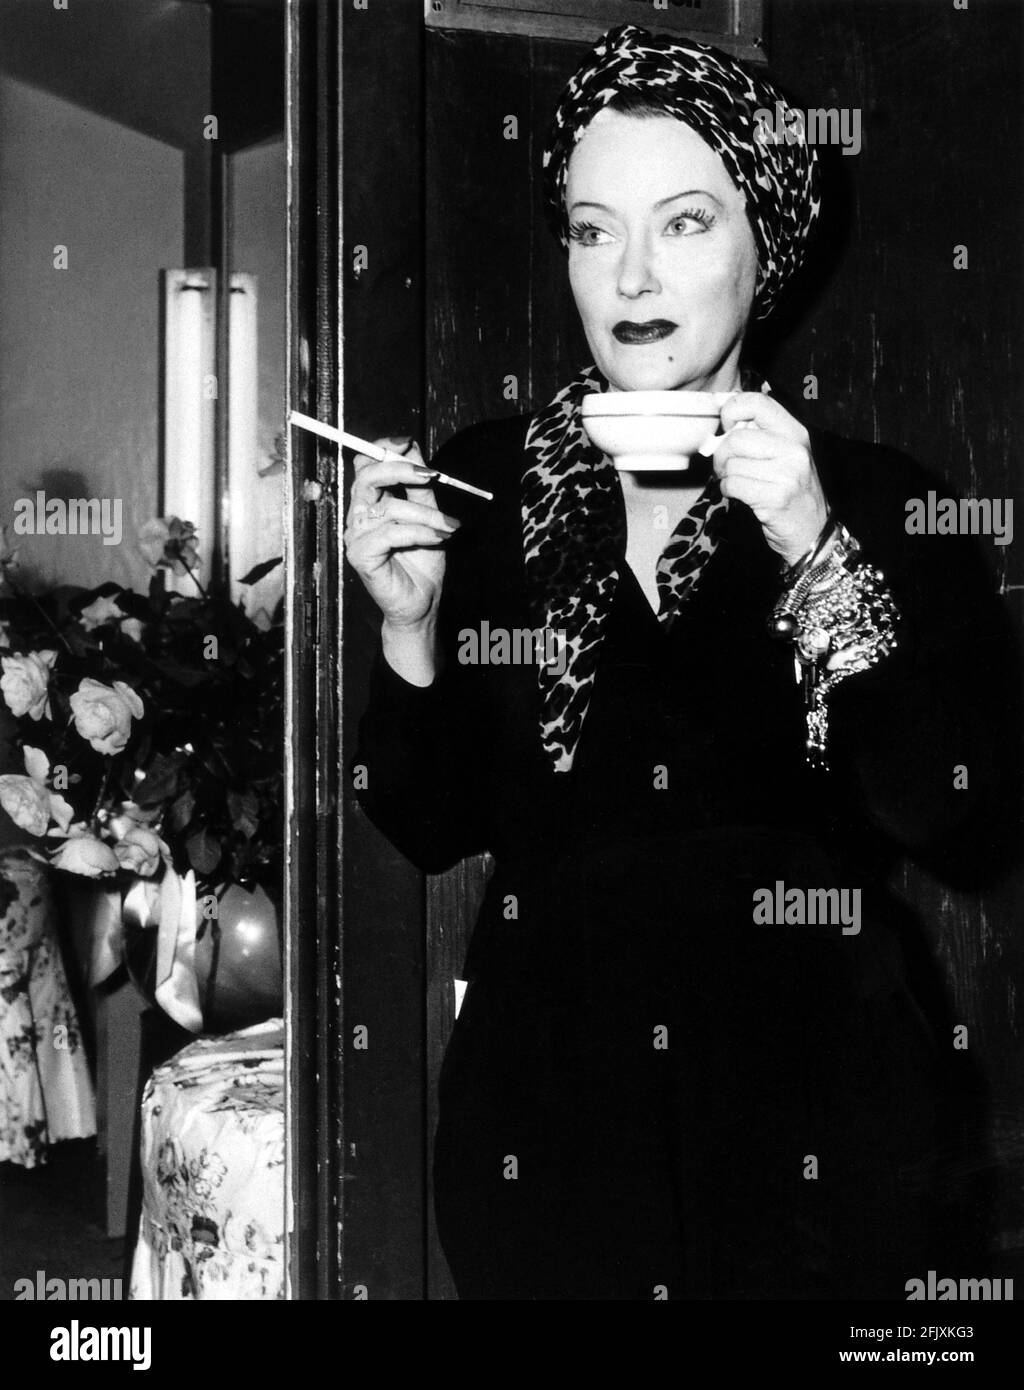 1951 , USA : The movie actress   GLORIA SWANSON ( 1898 - 1983 )  as Norma Desmond in SUNSET BOULEVARD ( Viale del Tramonto ) by Billy Wilder, costume by Edith HEAD , Paramount pubblicity still - FILM - CINEMA - attrice cinematografica - leopardo - leopardato - maculato - VAMP - leopard - leopard-skin - leoparded - hat - turbante - turban - VAMP - DIVA - DIVINA - DIVINE - Hollywood on Hollywood  - bracelet - braccialetto - gioielli - gioiello - jewel - jewels - jewellery - bijoux - bigiotteria - mole - neo - cup of the - tazza di té -  sigaretta - cigarette - fumo - fumatore - fumatrice - smoke Stock Photo